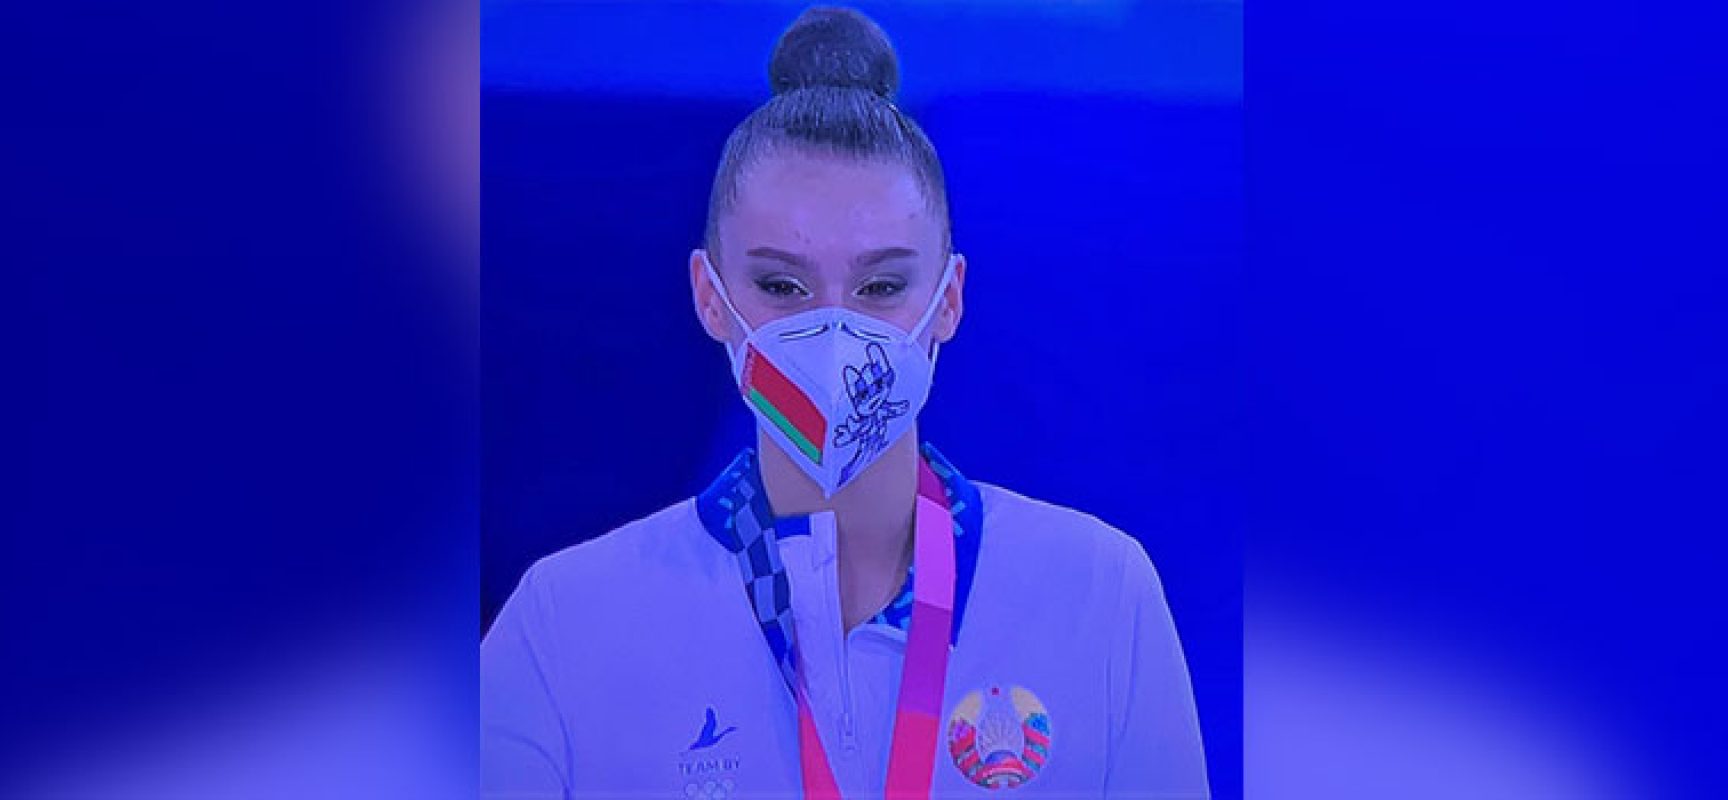 La bielorussa Harnasko (Ginnastica Ritmica Iris) medaglia di bronzo alle Olimpiadi di Tokyo 2020